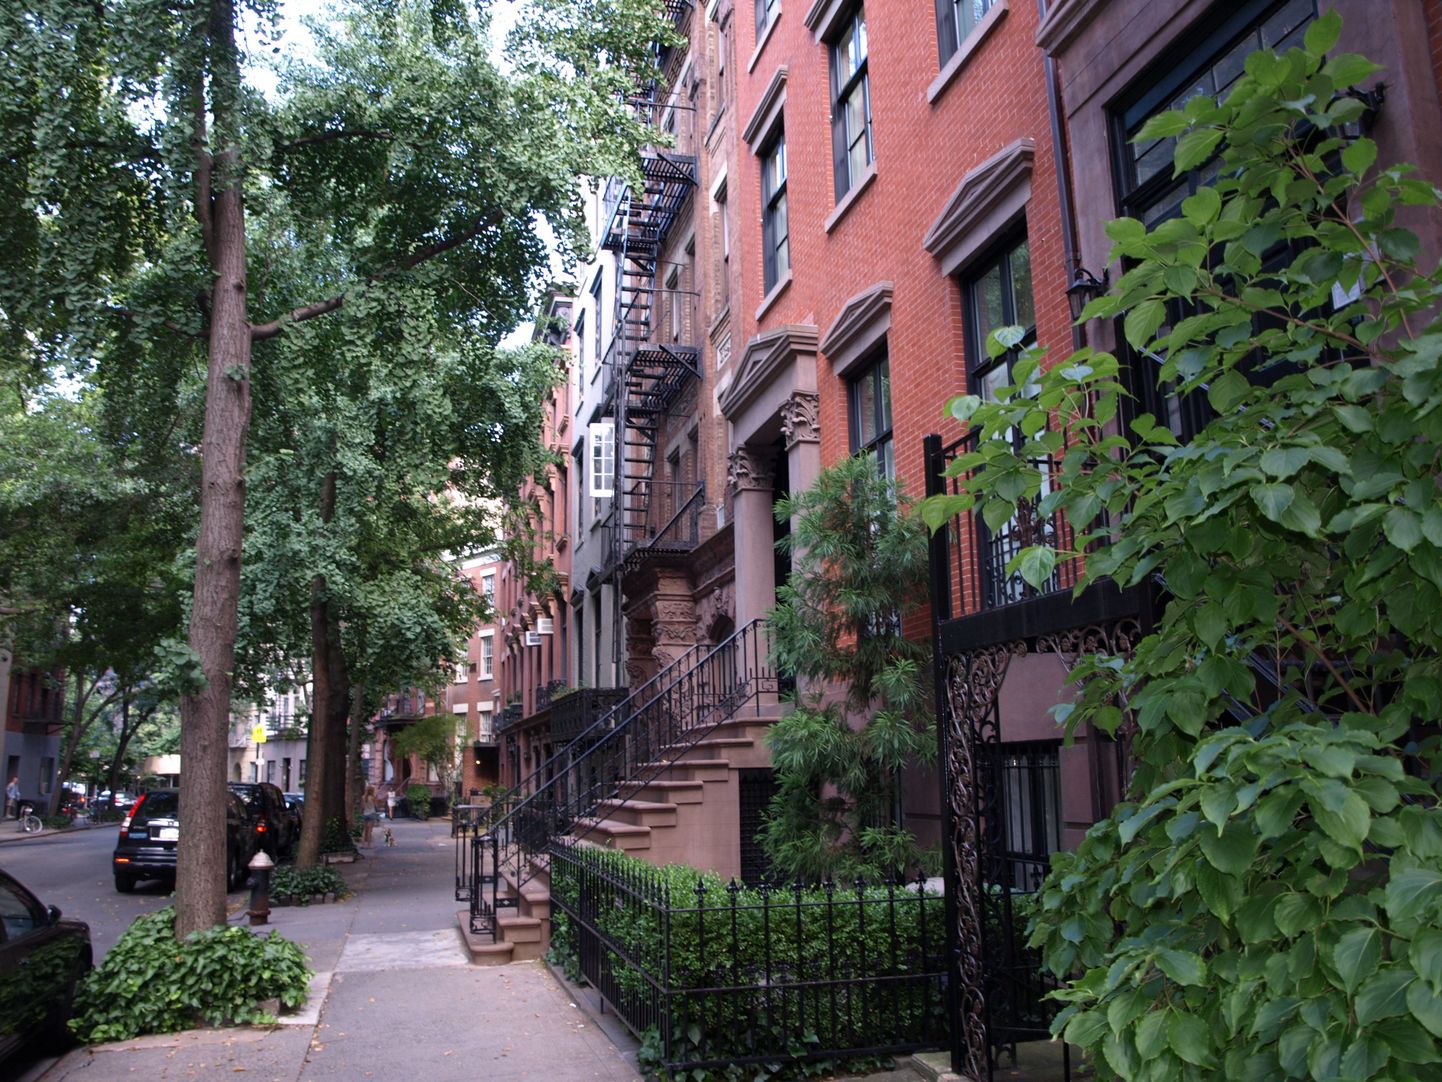 Tüüpiline Greenwich Village: punastest tellistest fassaadiga kolme-neljakorruselised eramud tihedalt reas, kitsaste tänavate ääres kõrgumas lehtpuud. See polekski nagu New York, ega ju?